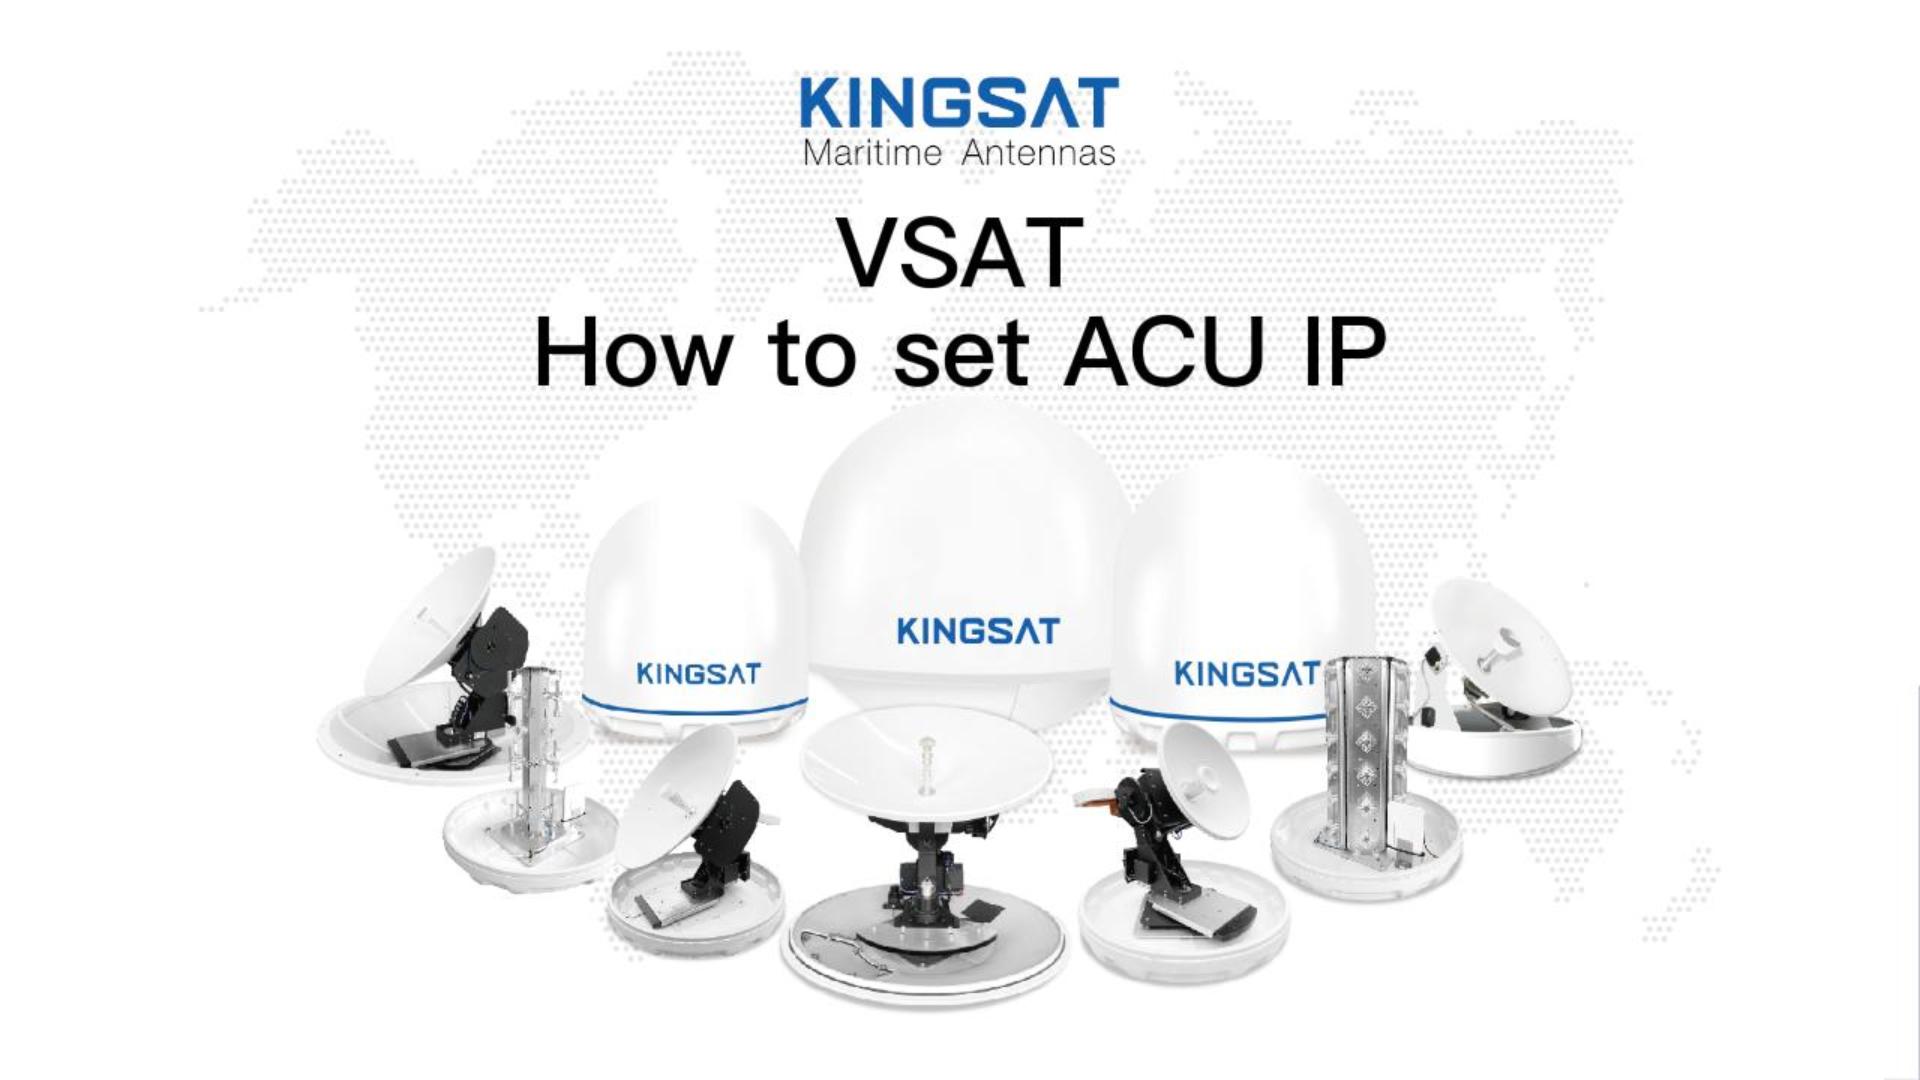 How to set ACU IP?